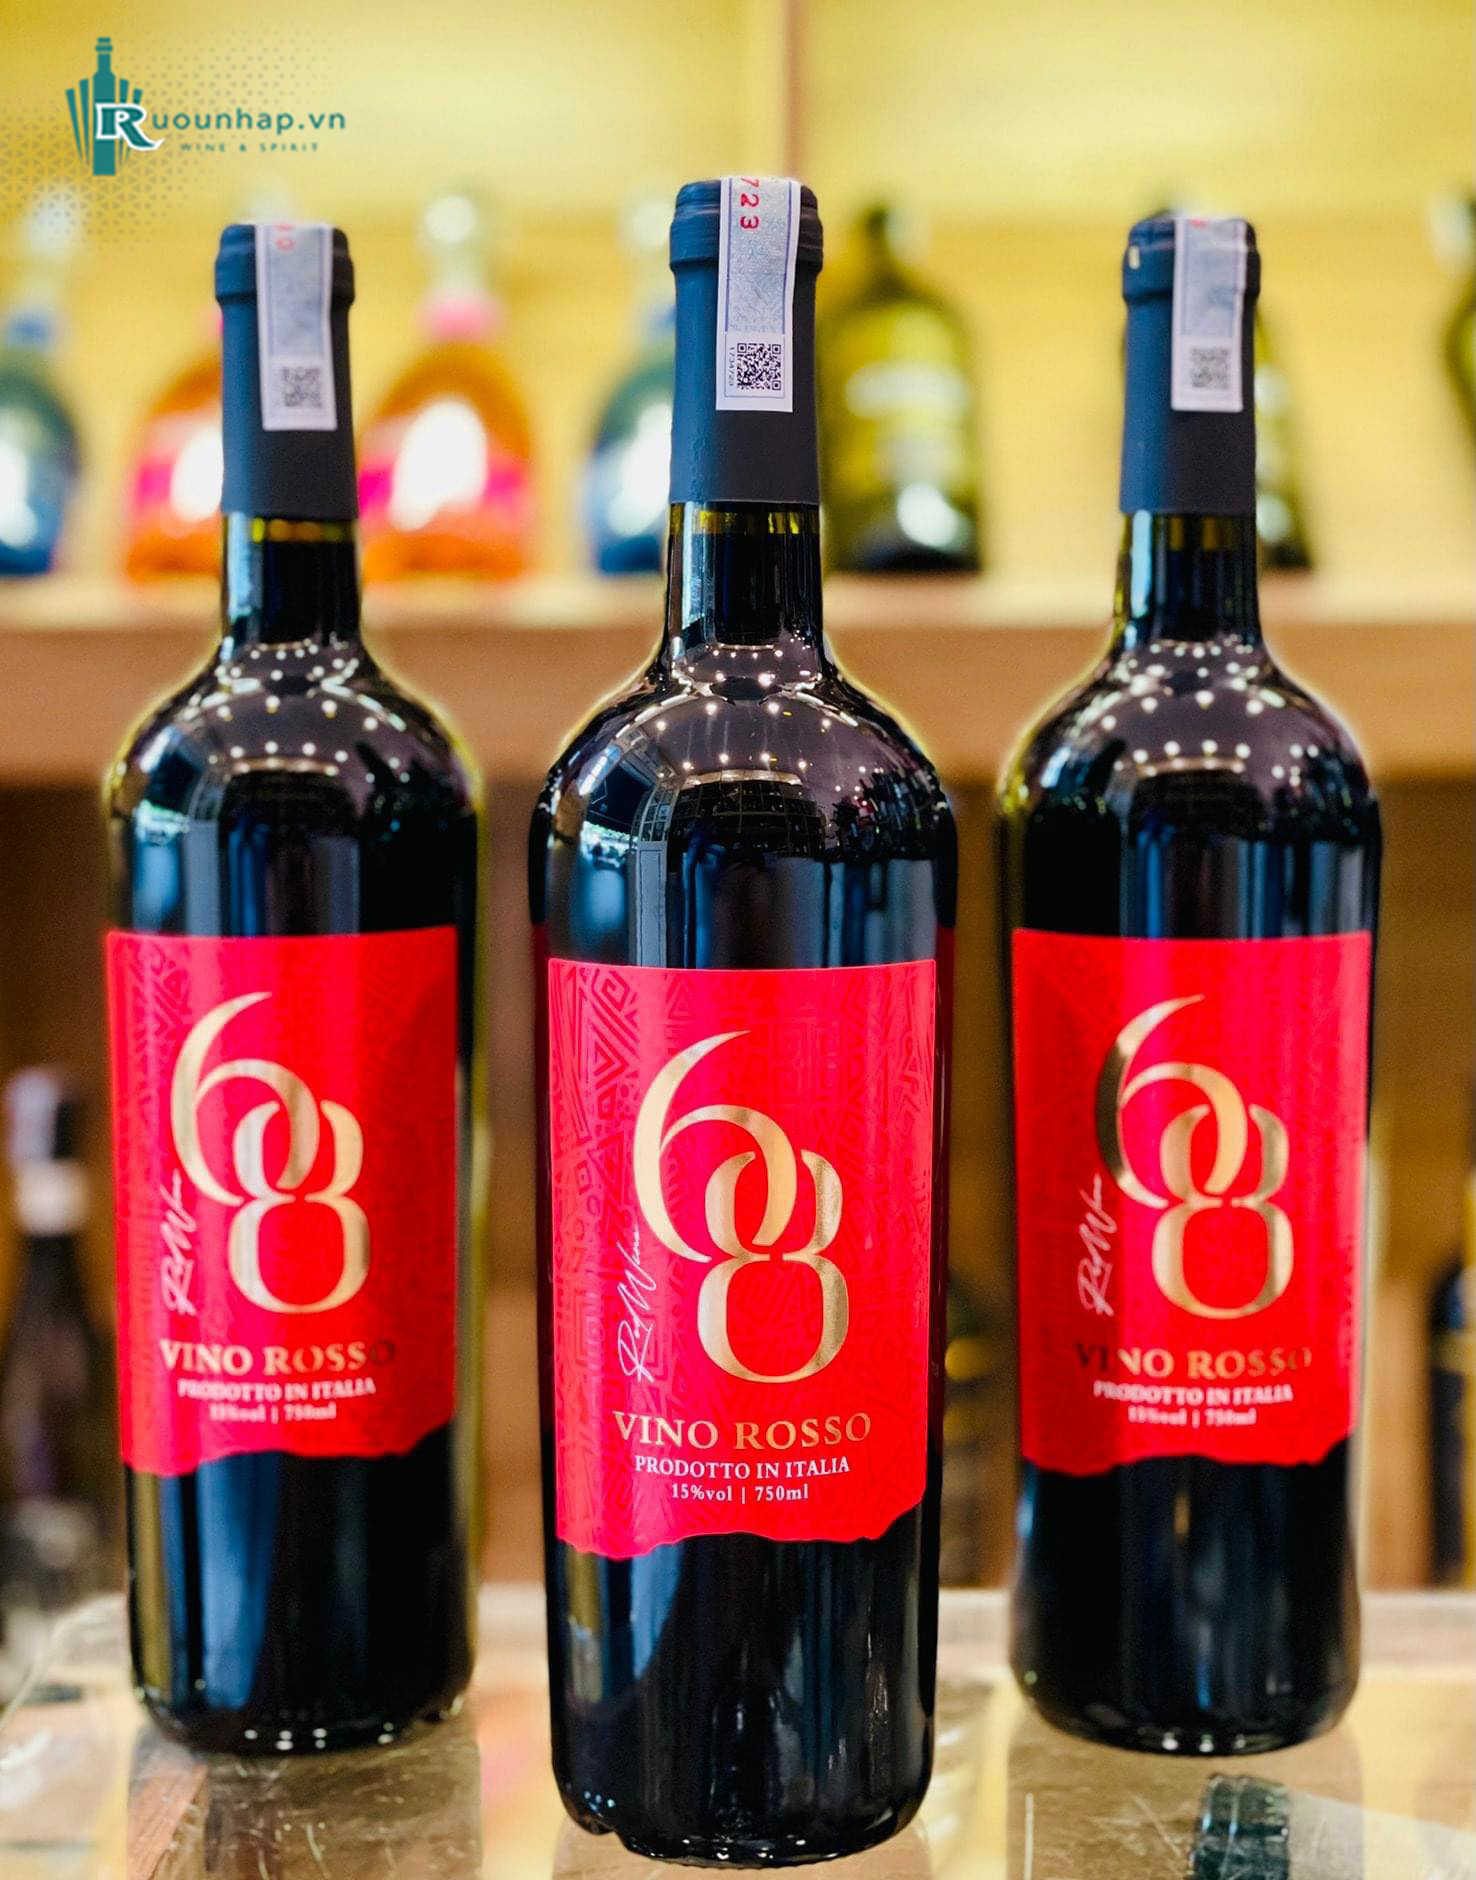 Rượu Vang 68 Vino Rosso